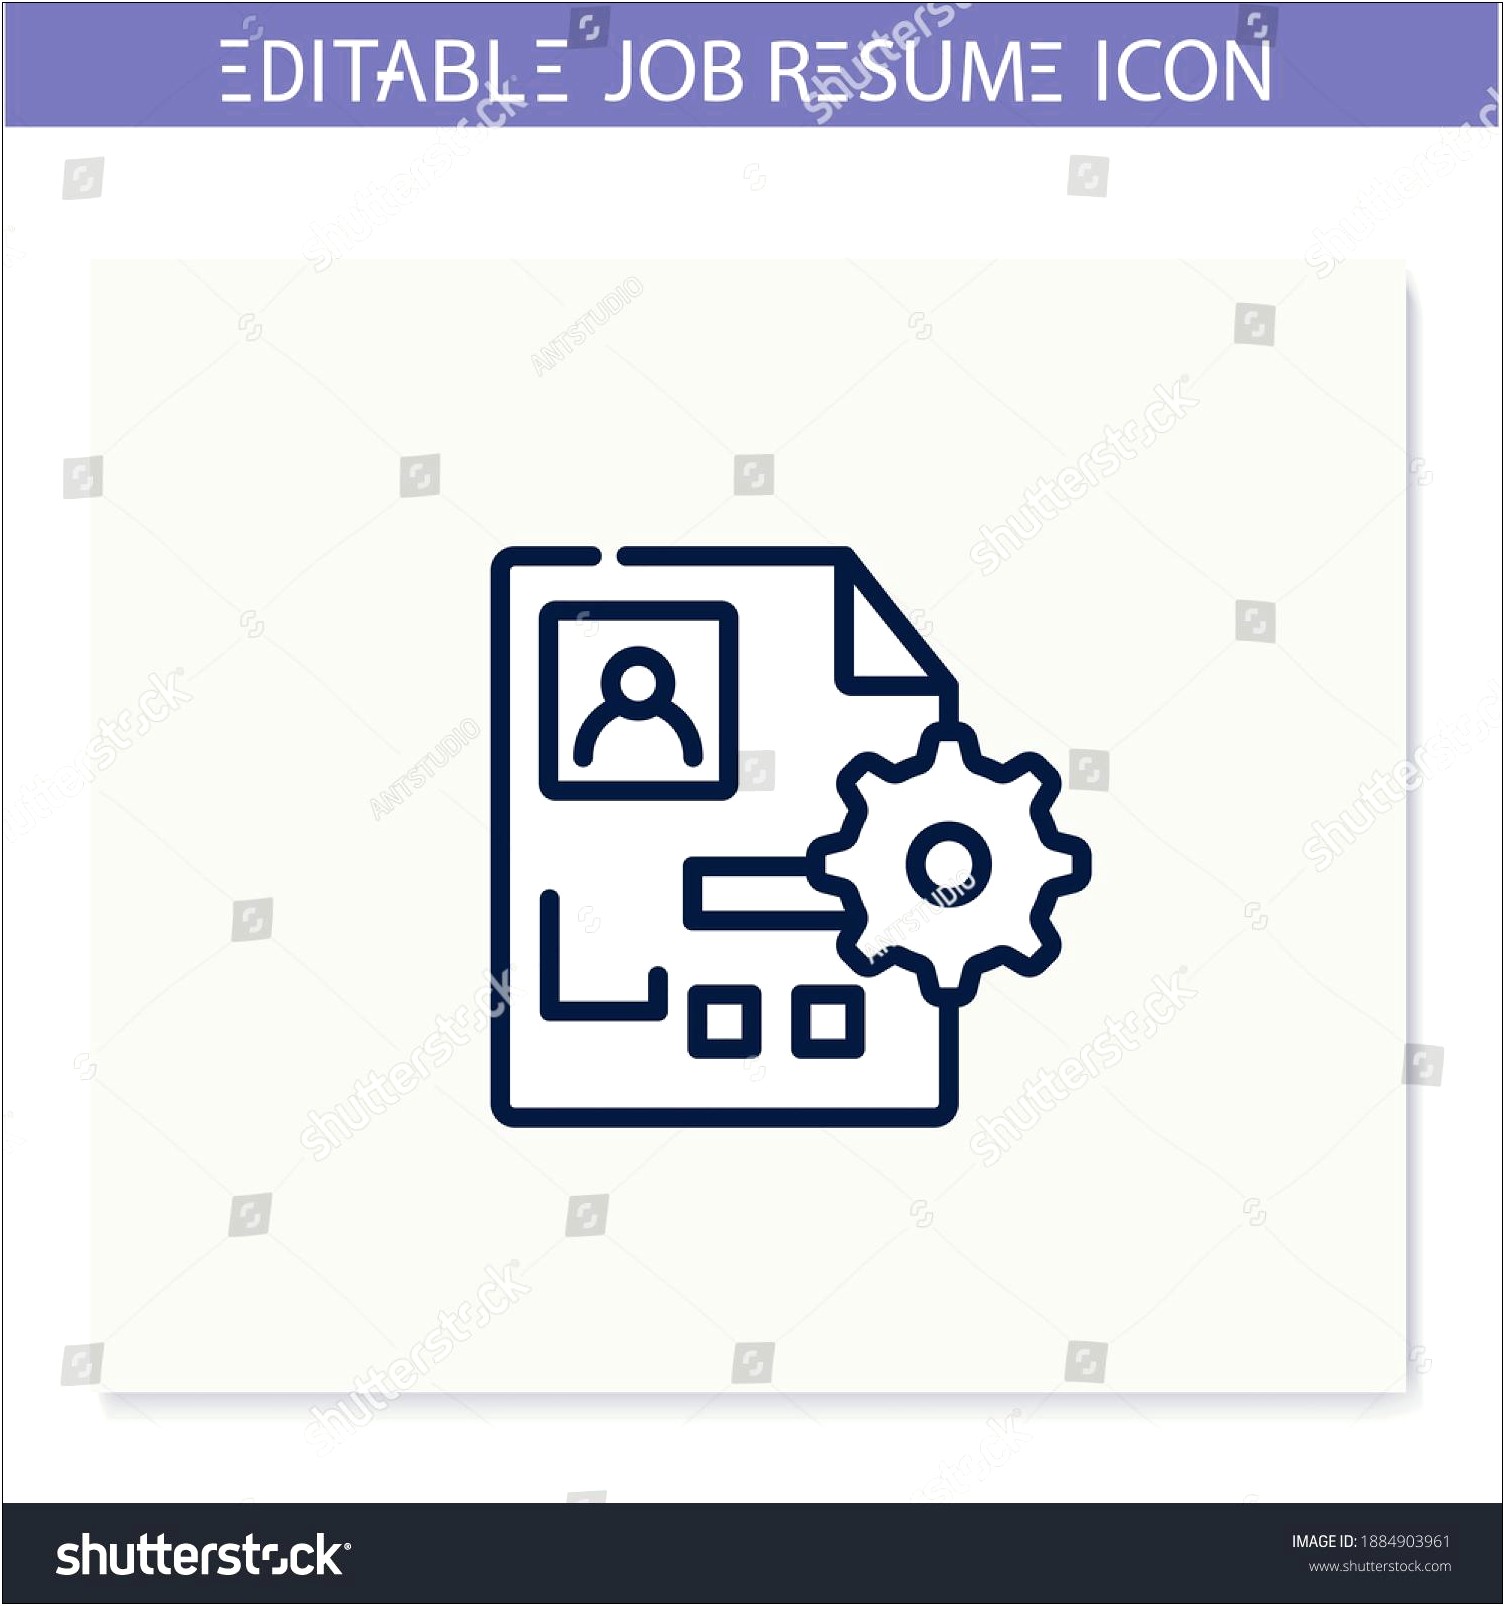 Skill Based Resume For Recruitment